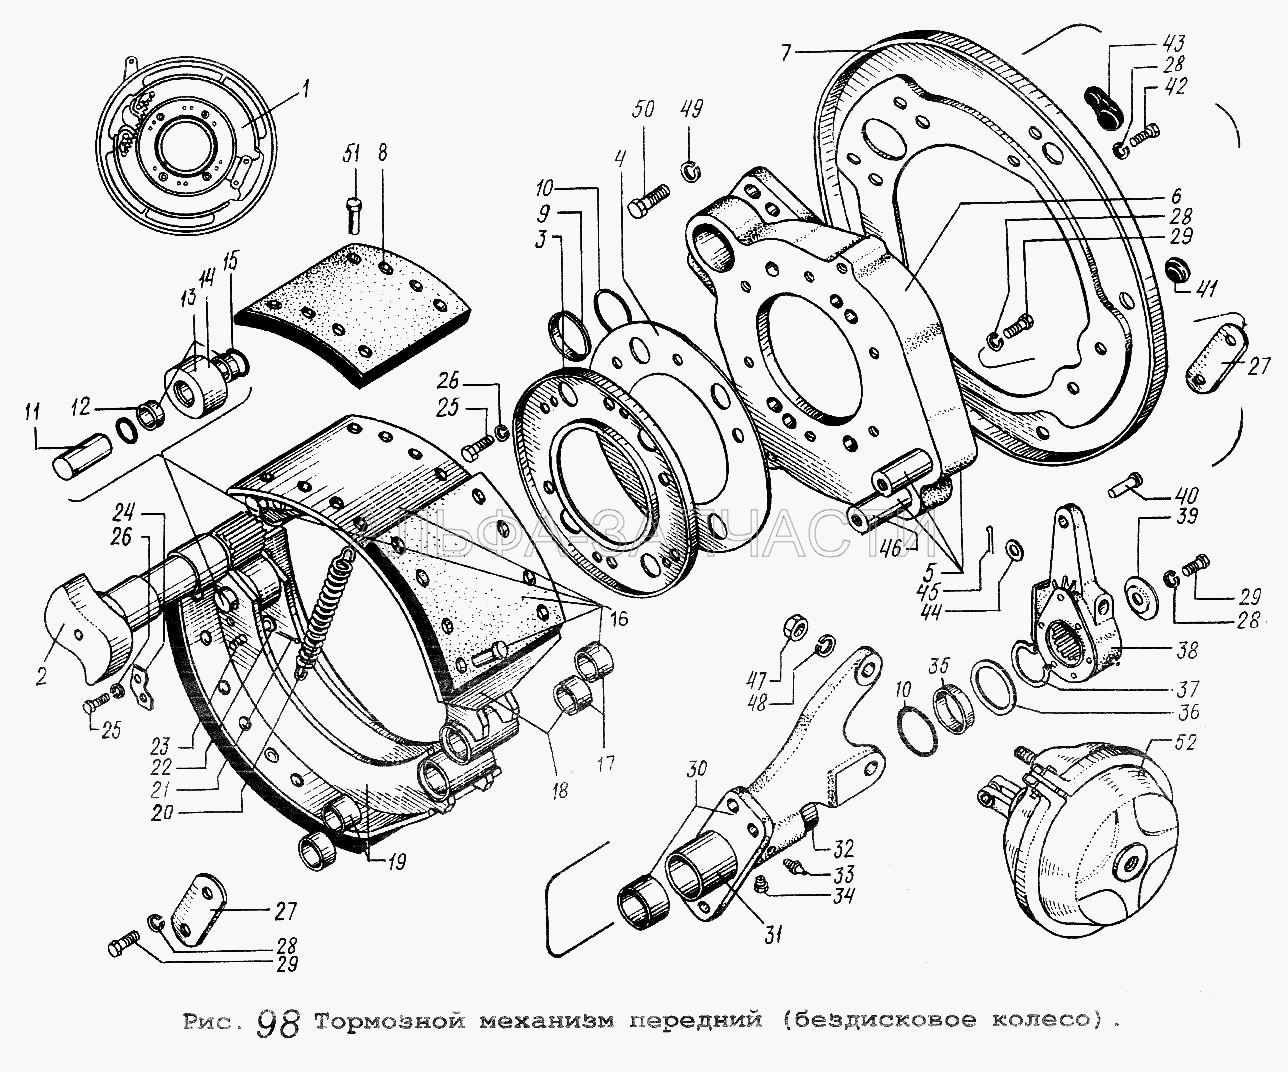 Тормозной механизм передний (бездисковое колесо) (201452 Болт М8-6gх12) 